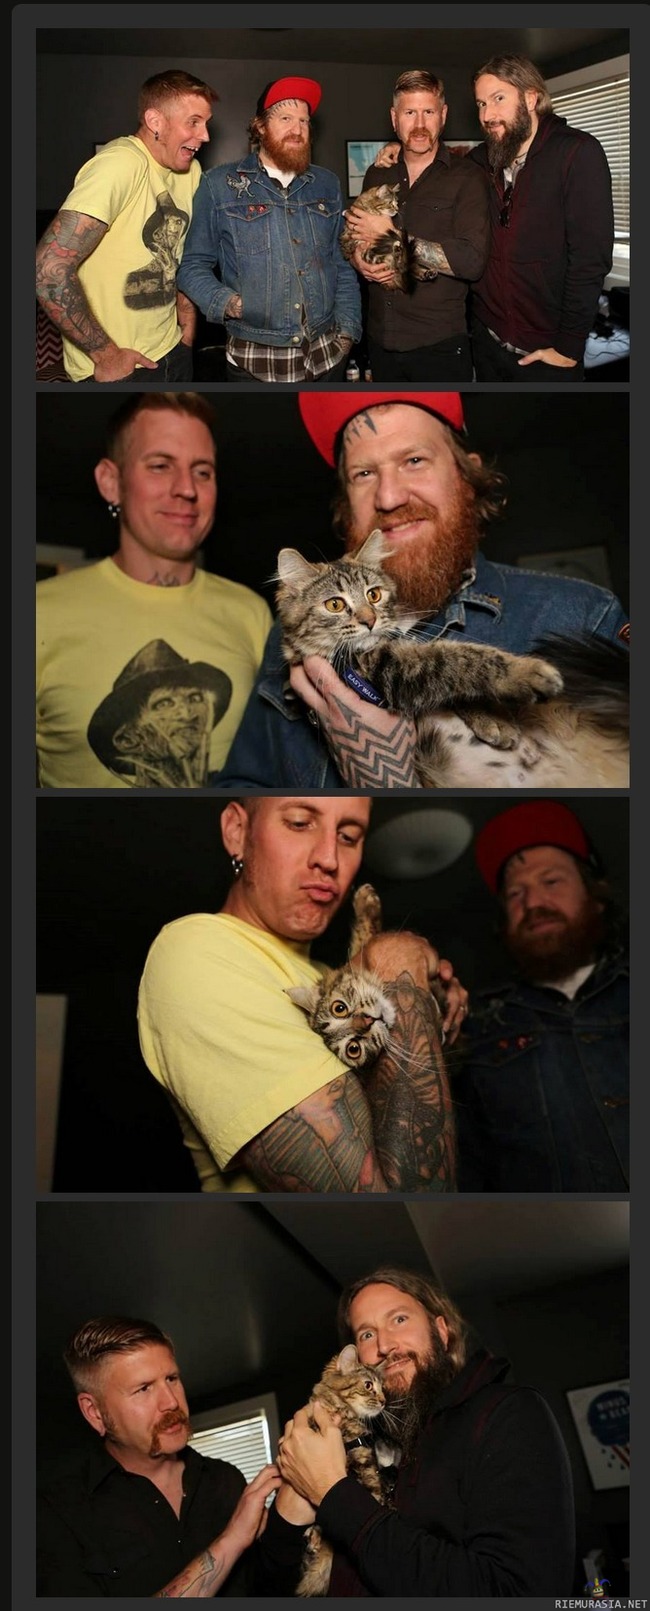 &#039;Mastodon&#039; pelastaa kissan eläintarhasta - Progemetalliyhtye Mastodon pelastaa kissan Motley Zoo -eläintarhasta.